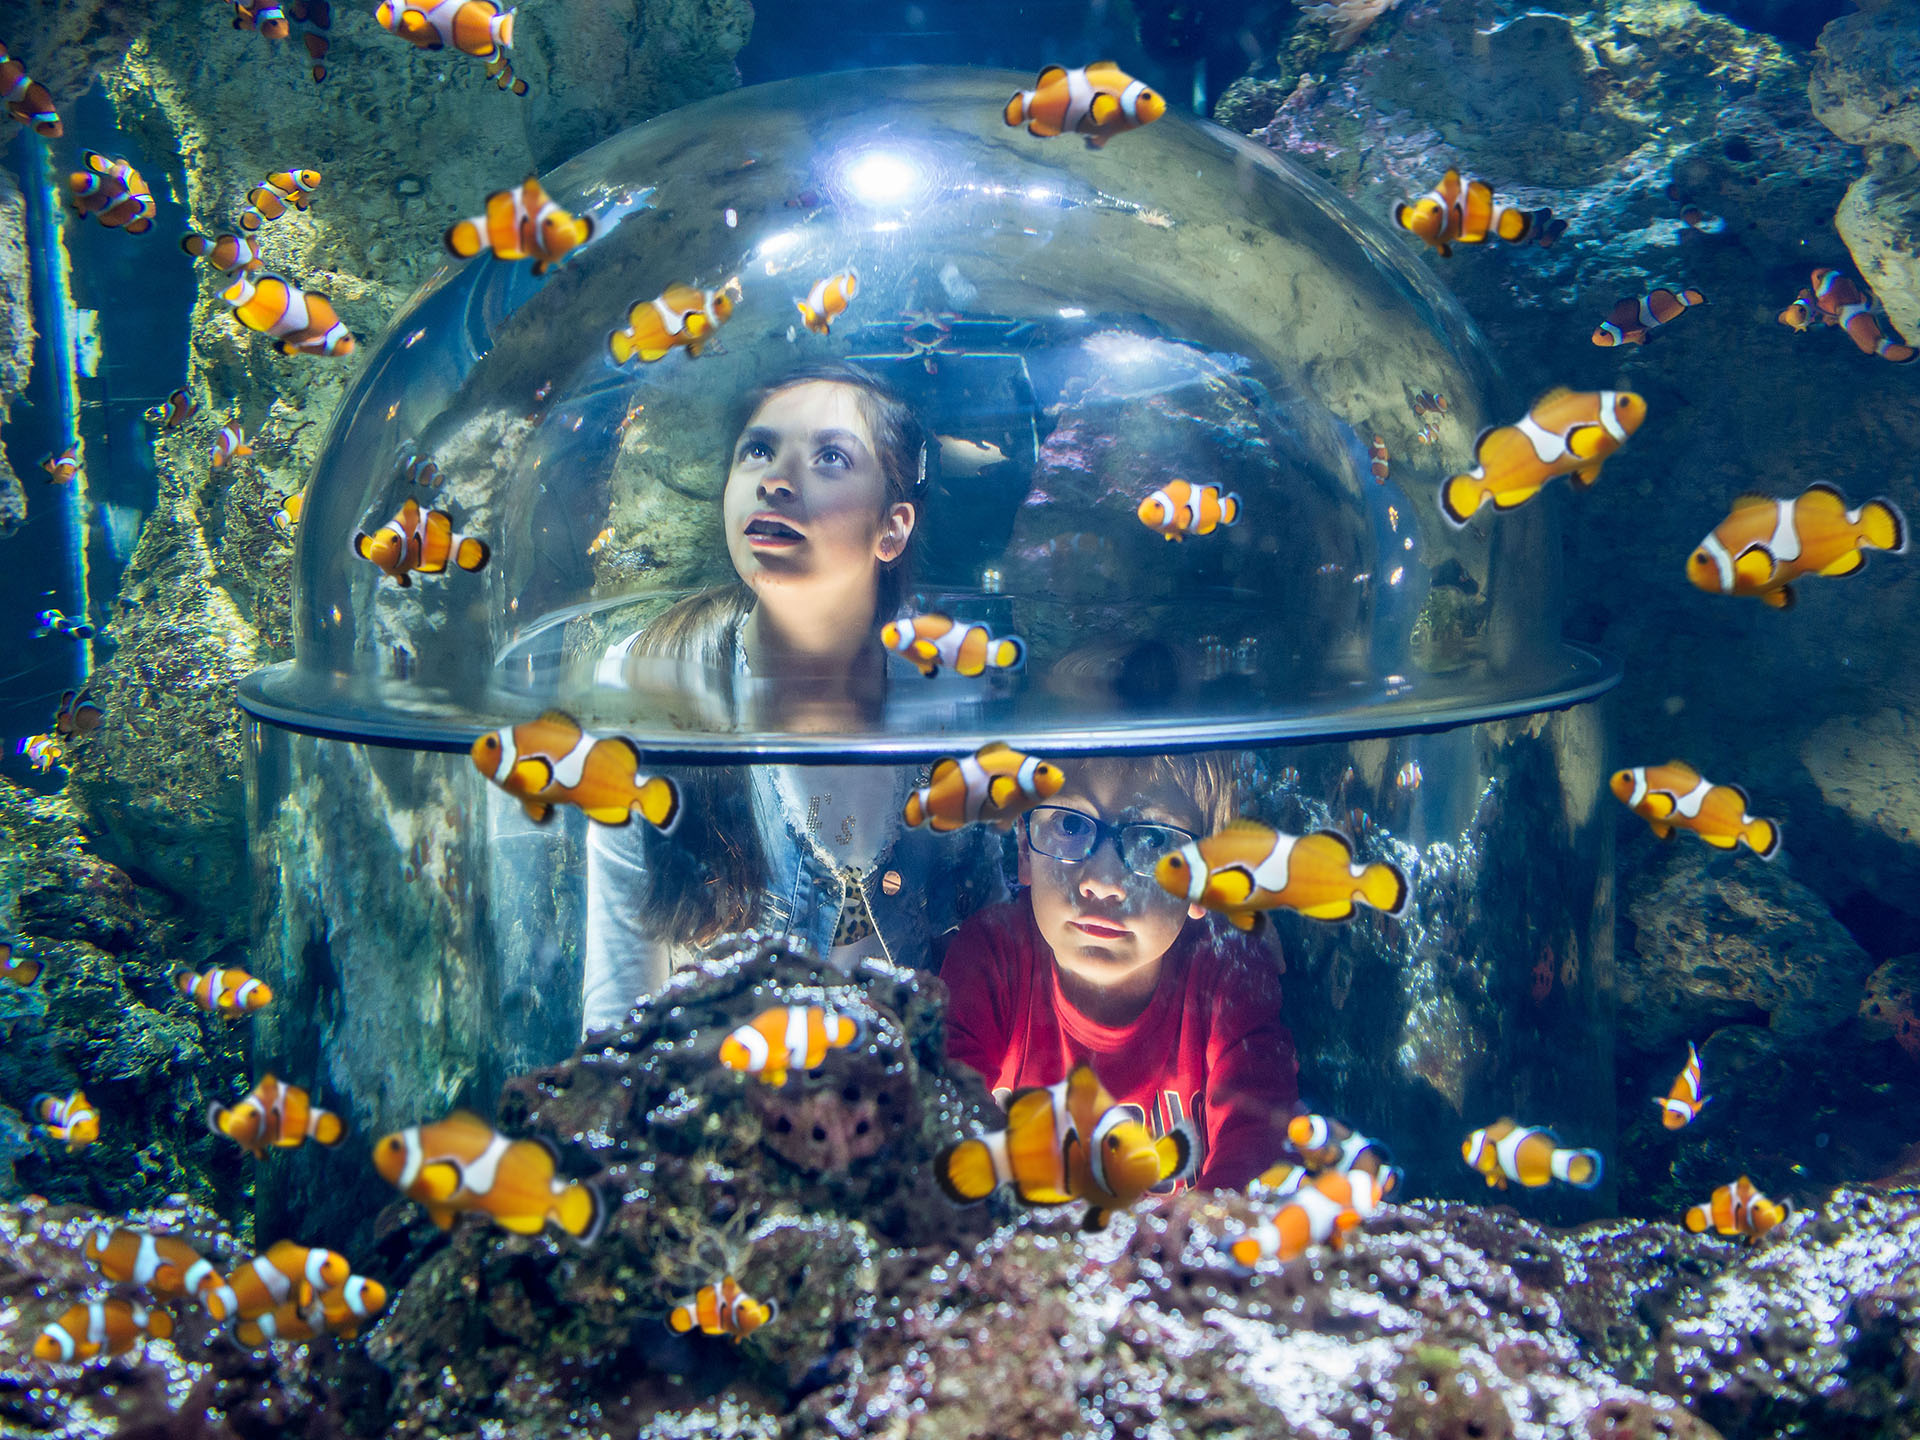 Gardaland SEA LIFE Aquarium - Caves of the Clownfish